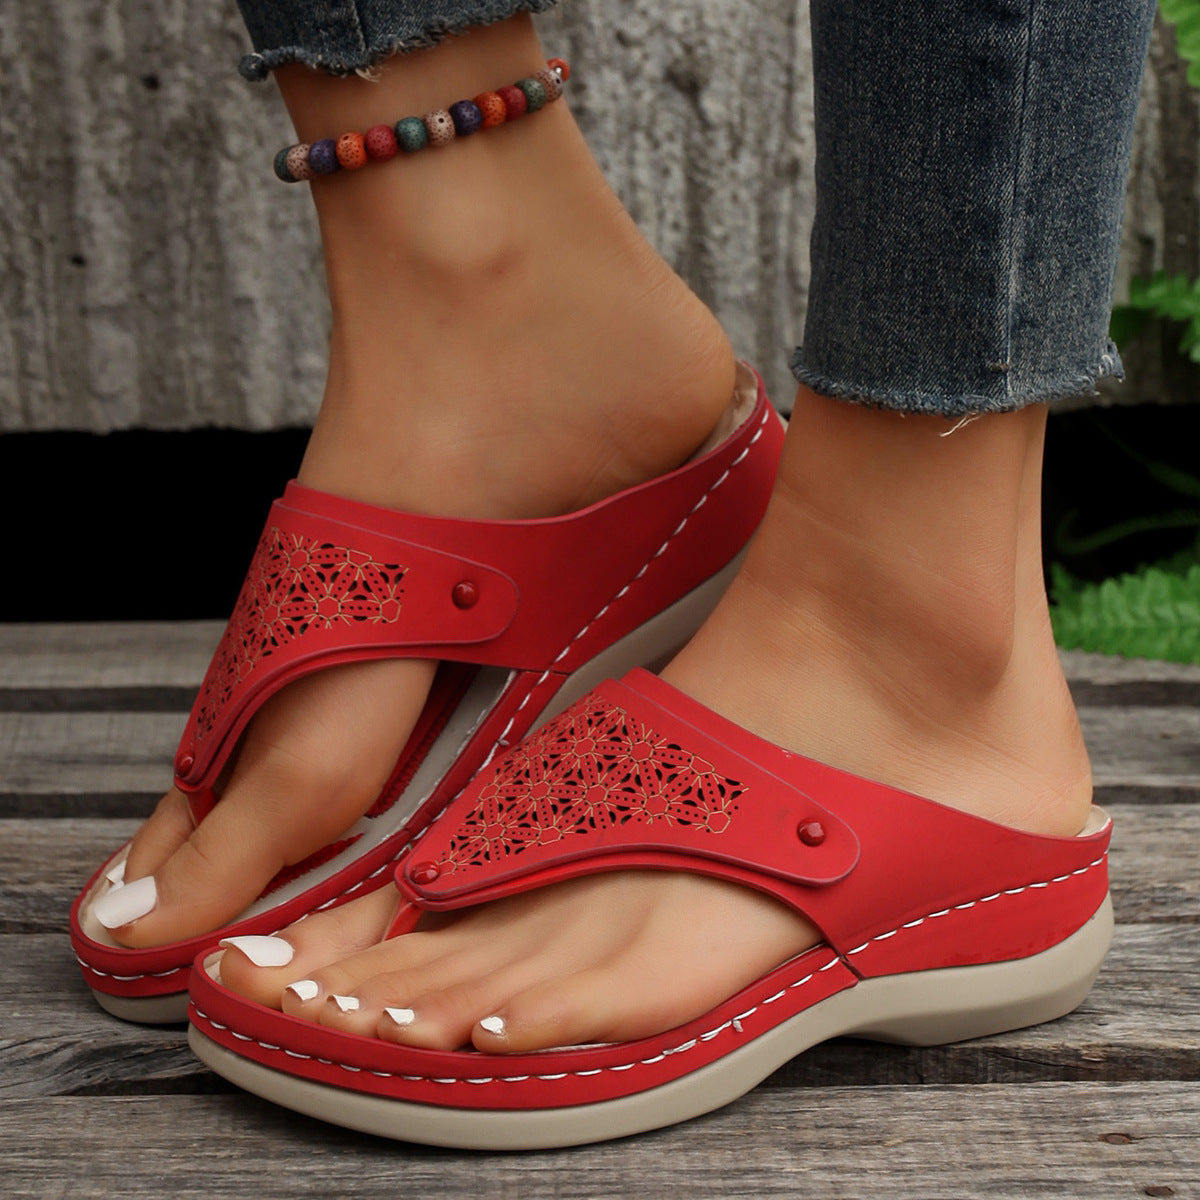 Thong Sandals Summer Flip Flops Women Outdoor Slippers Beach Shoes